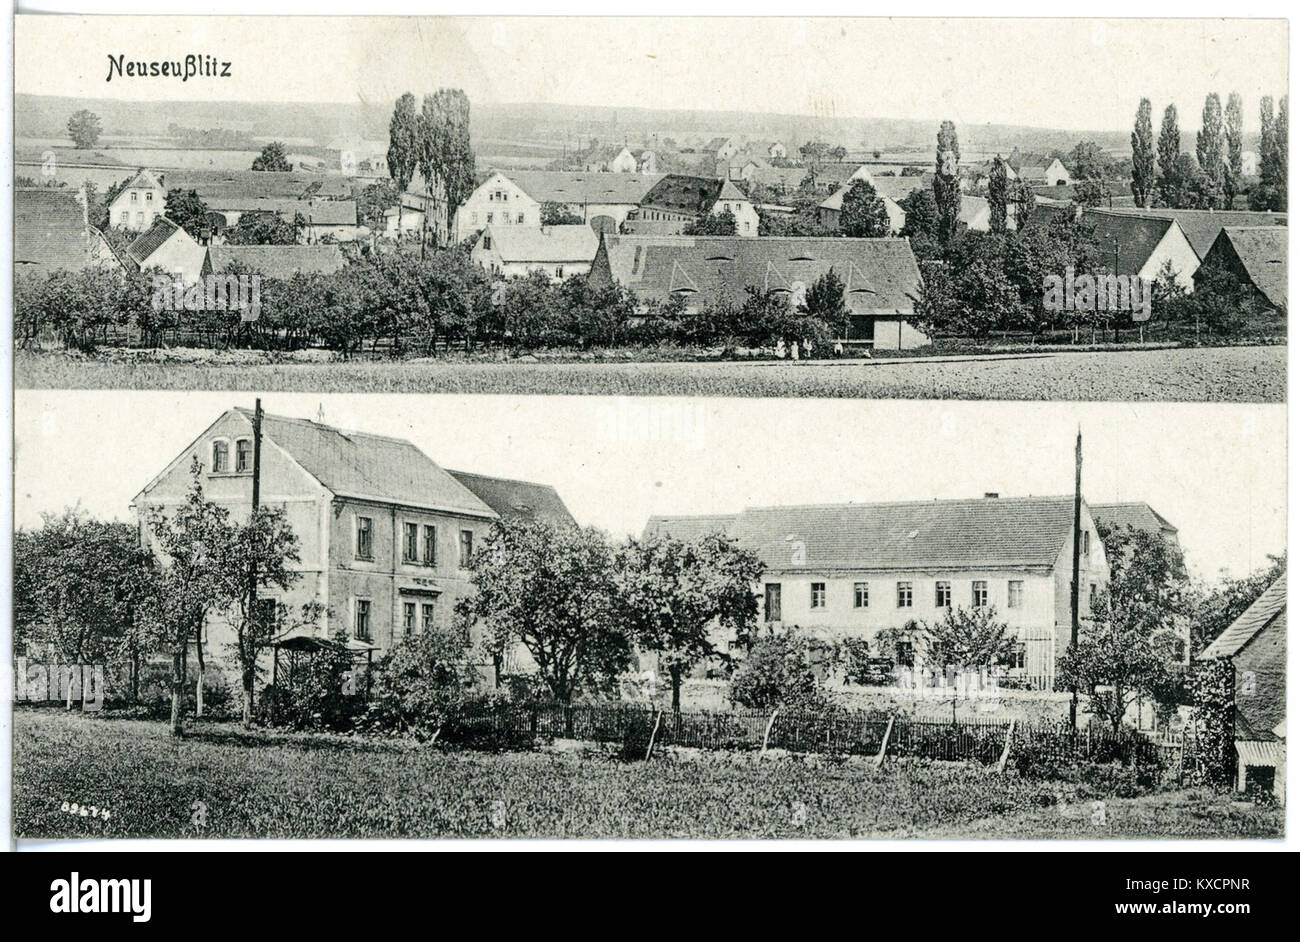 20598-Neuseußlitz-1917-Blick auf Neuseußlitz-Brück & Sohn Kunstverlag Foto Stock